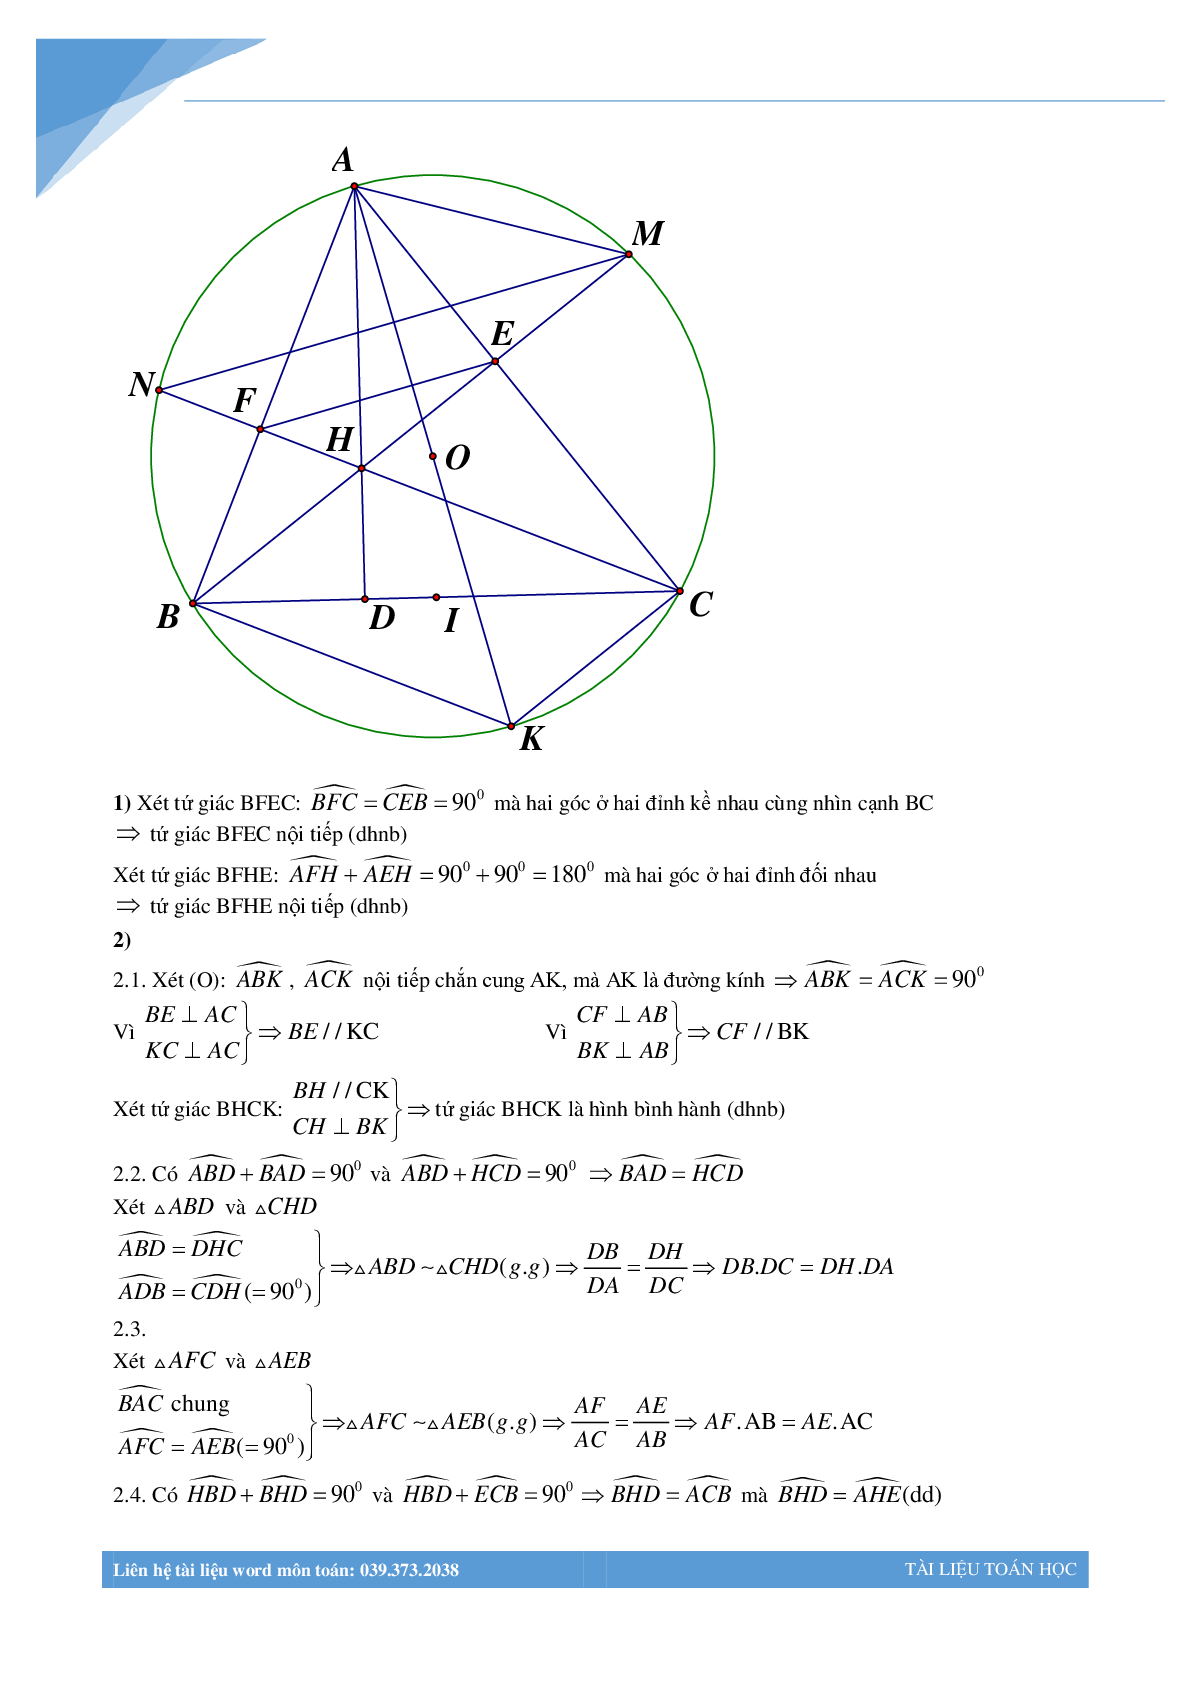 Chùm bài toán hình học luyện thi vào lớp 10 (trang 2)